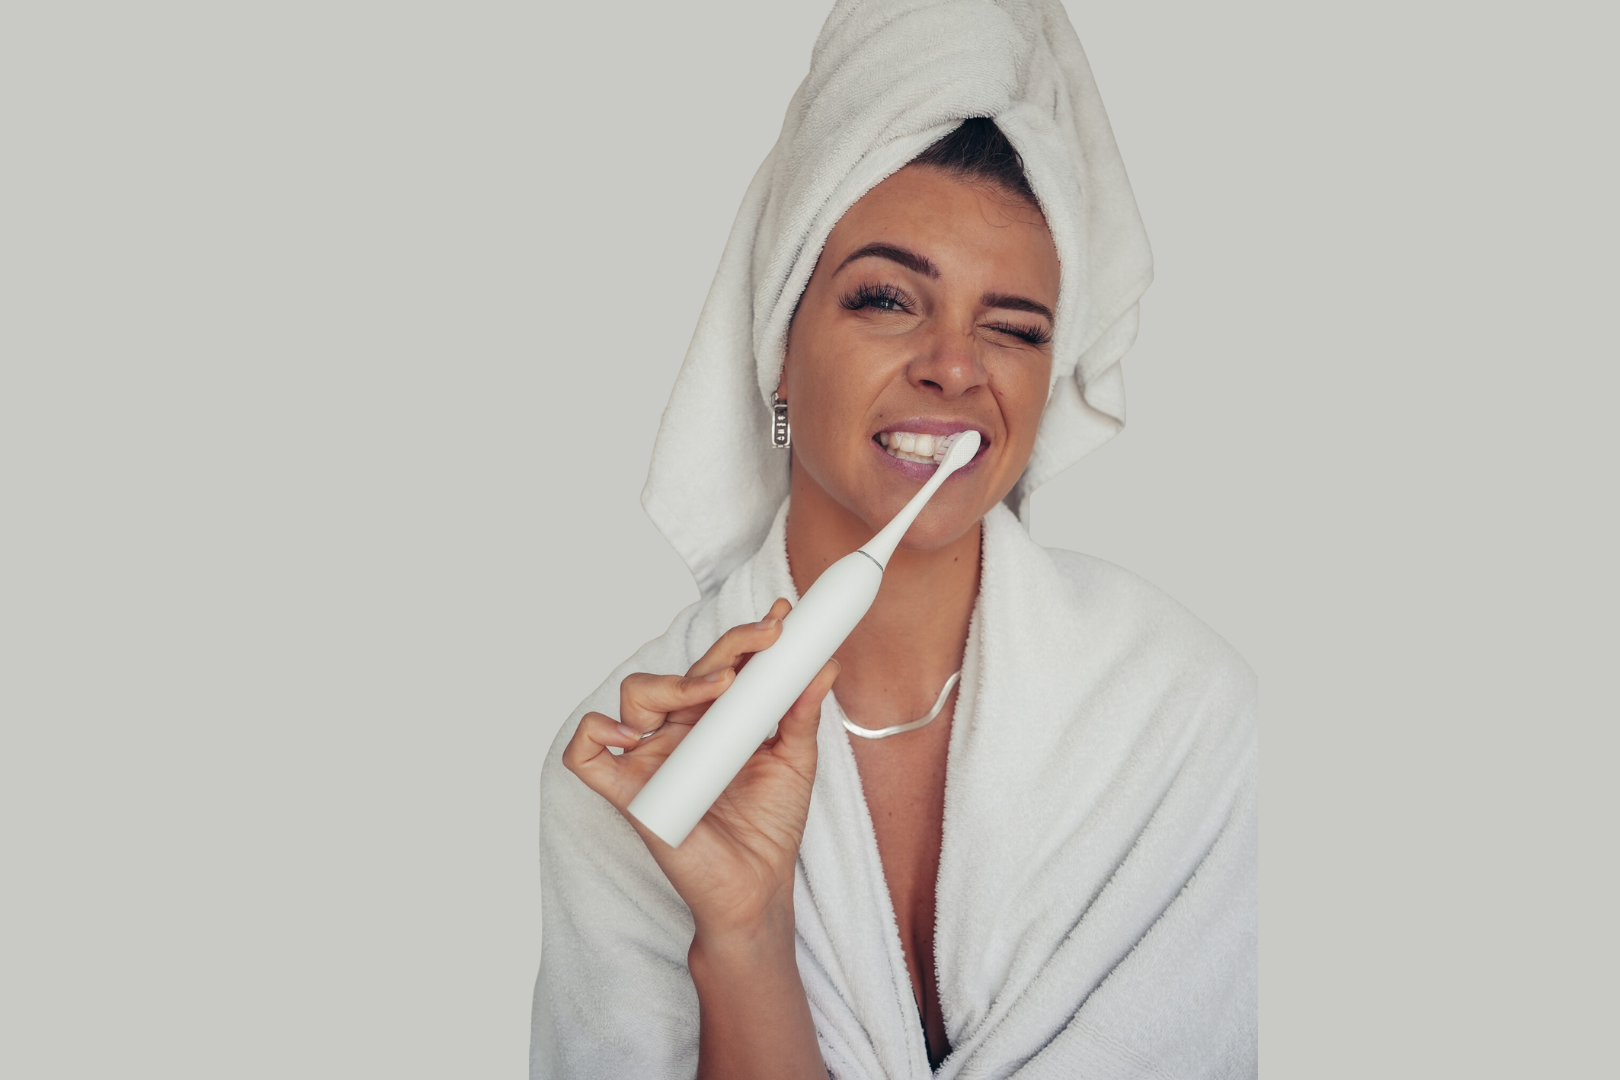 Sonische Tandenborstel: Een Stap Vooruit in Mondhygiëne